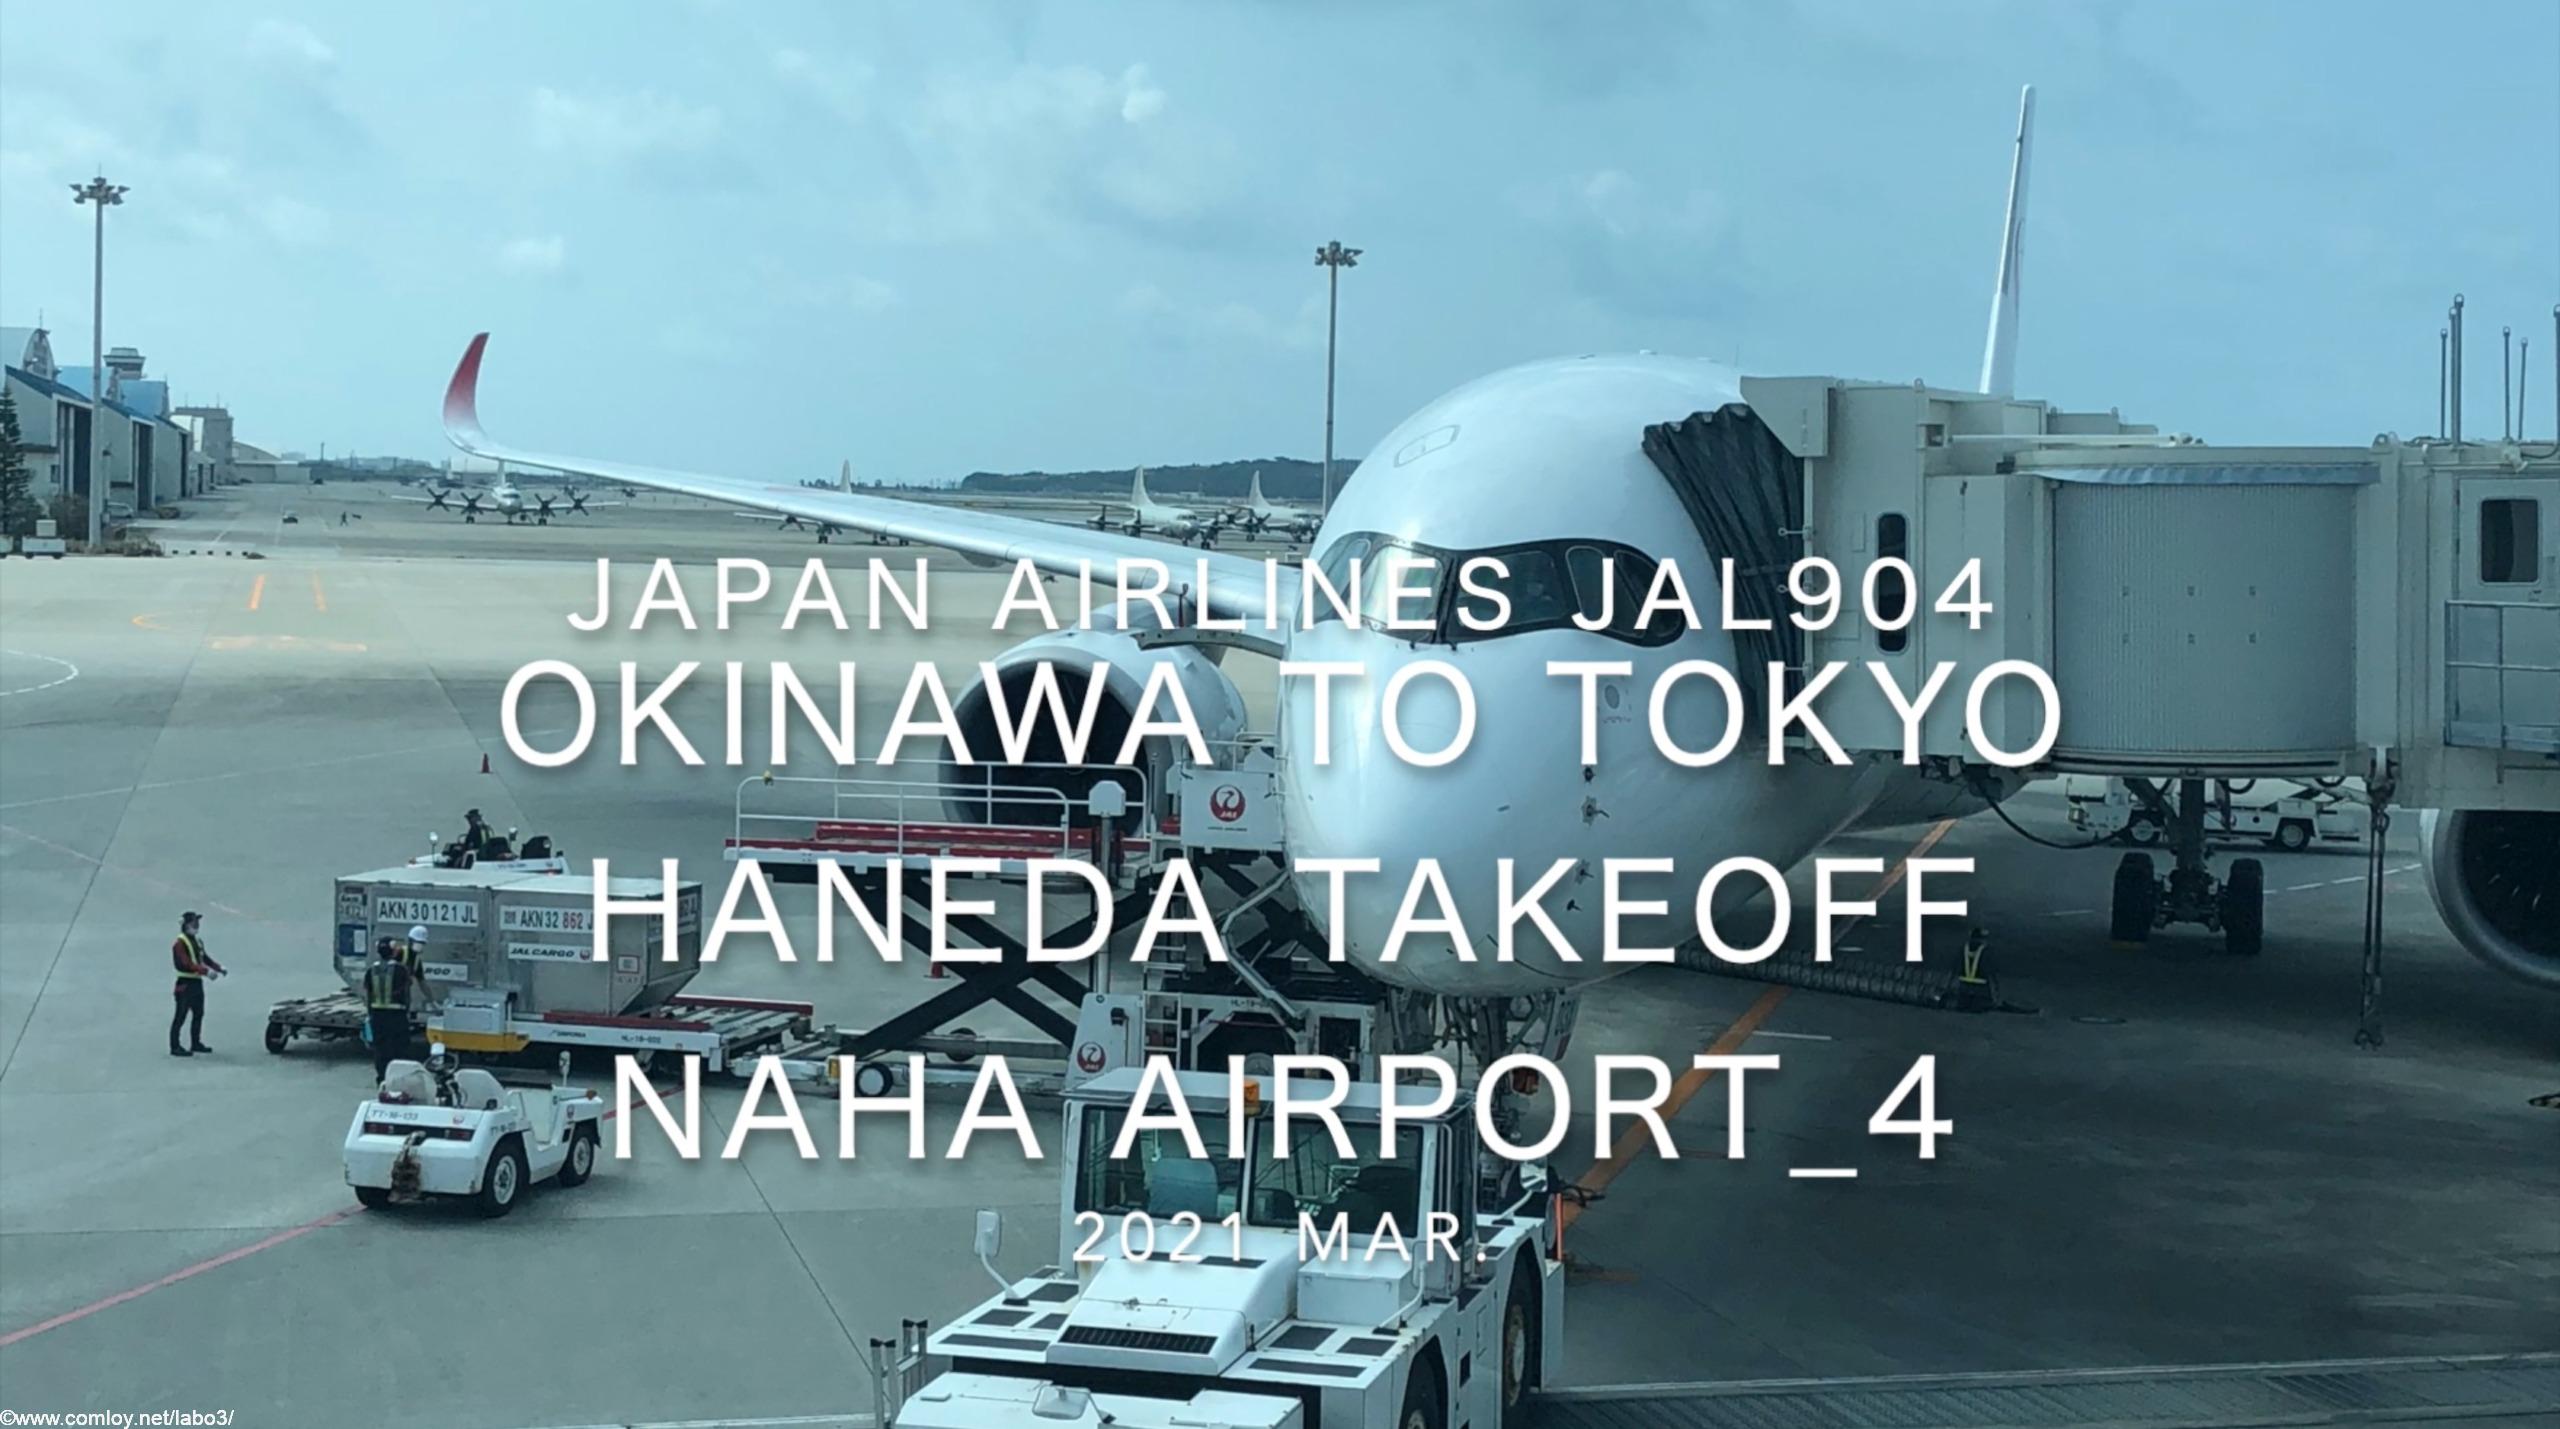 【機内から離着陸映像】2021 Mar Japan Airlines JAL904 OKINAWA NAHA to TOKYO HANEDA Takeoff NAHA Airport_4